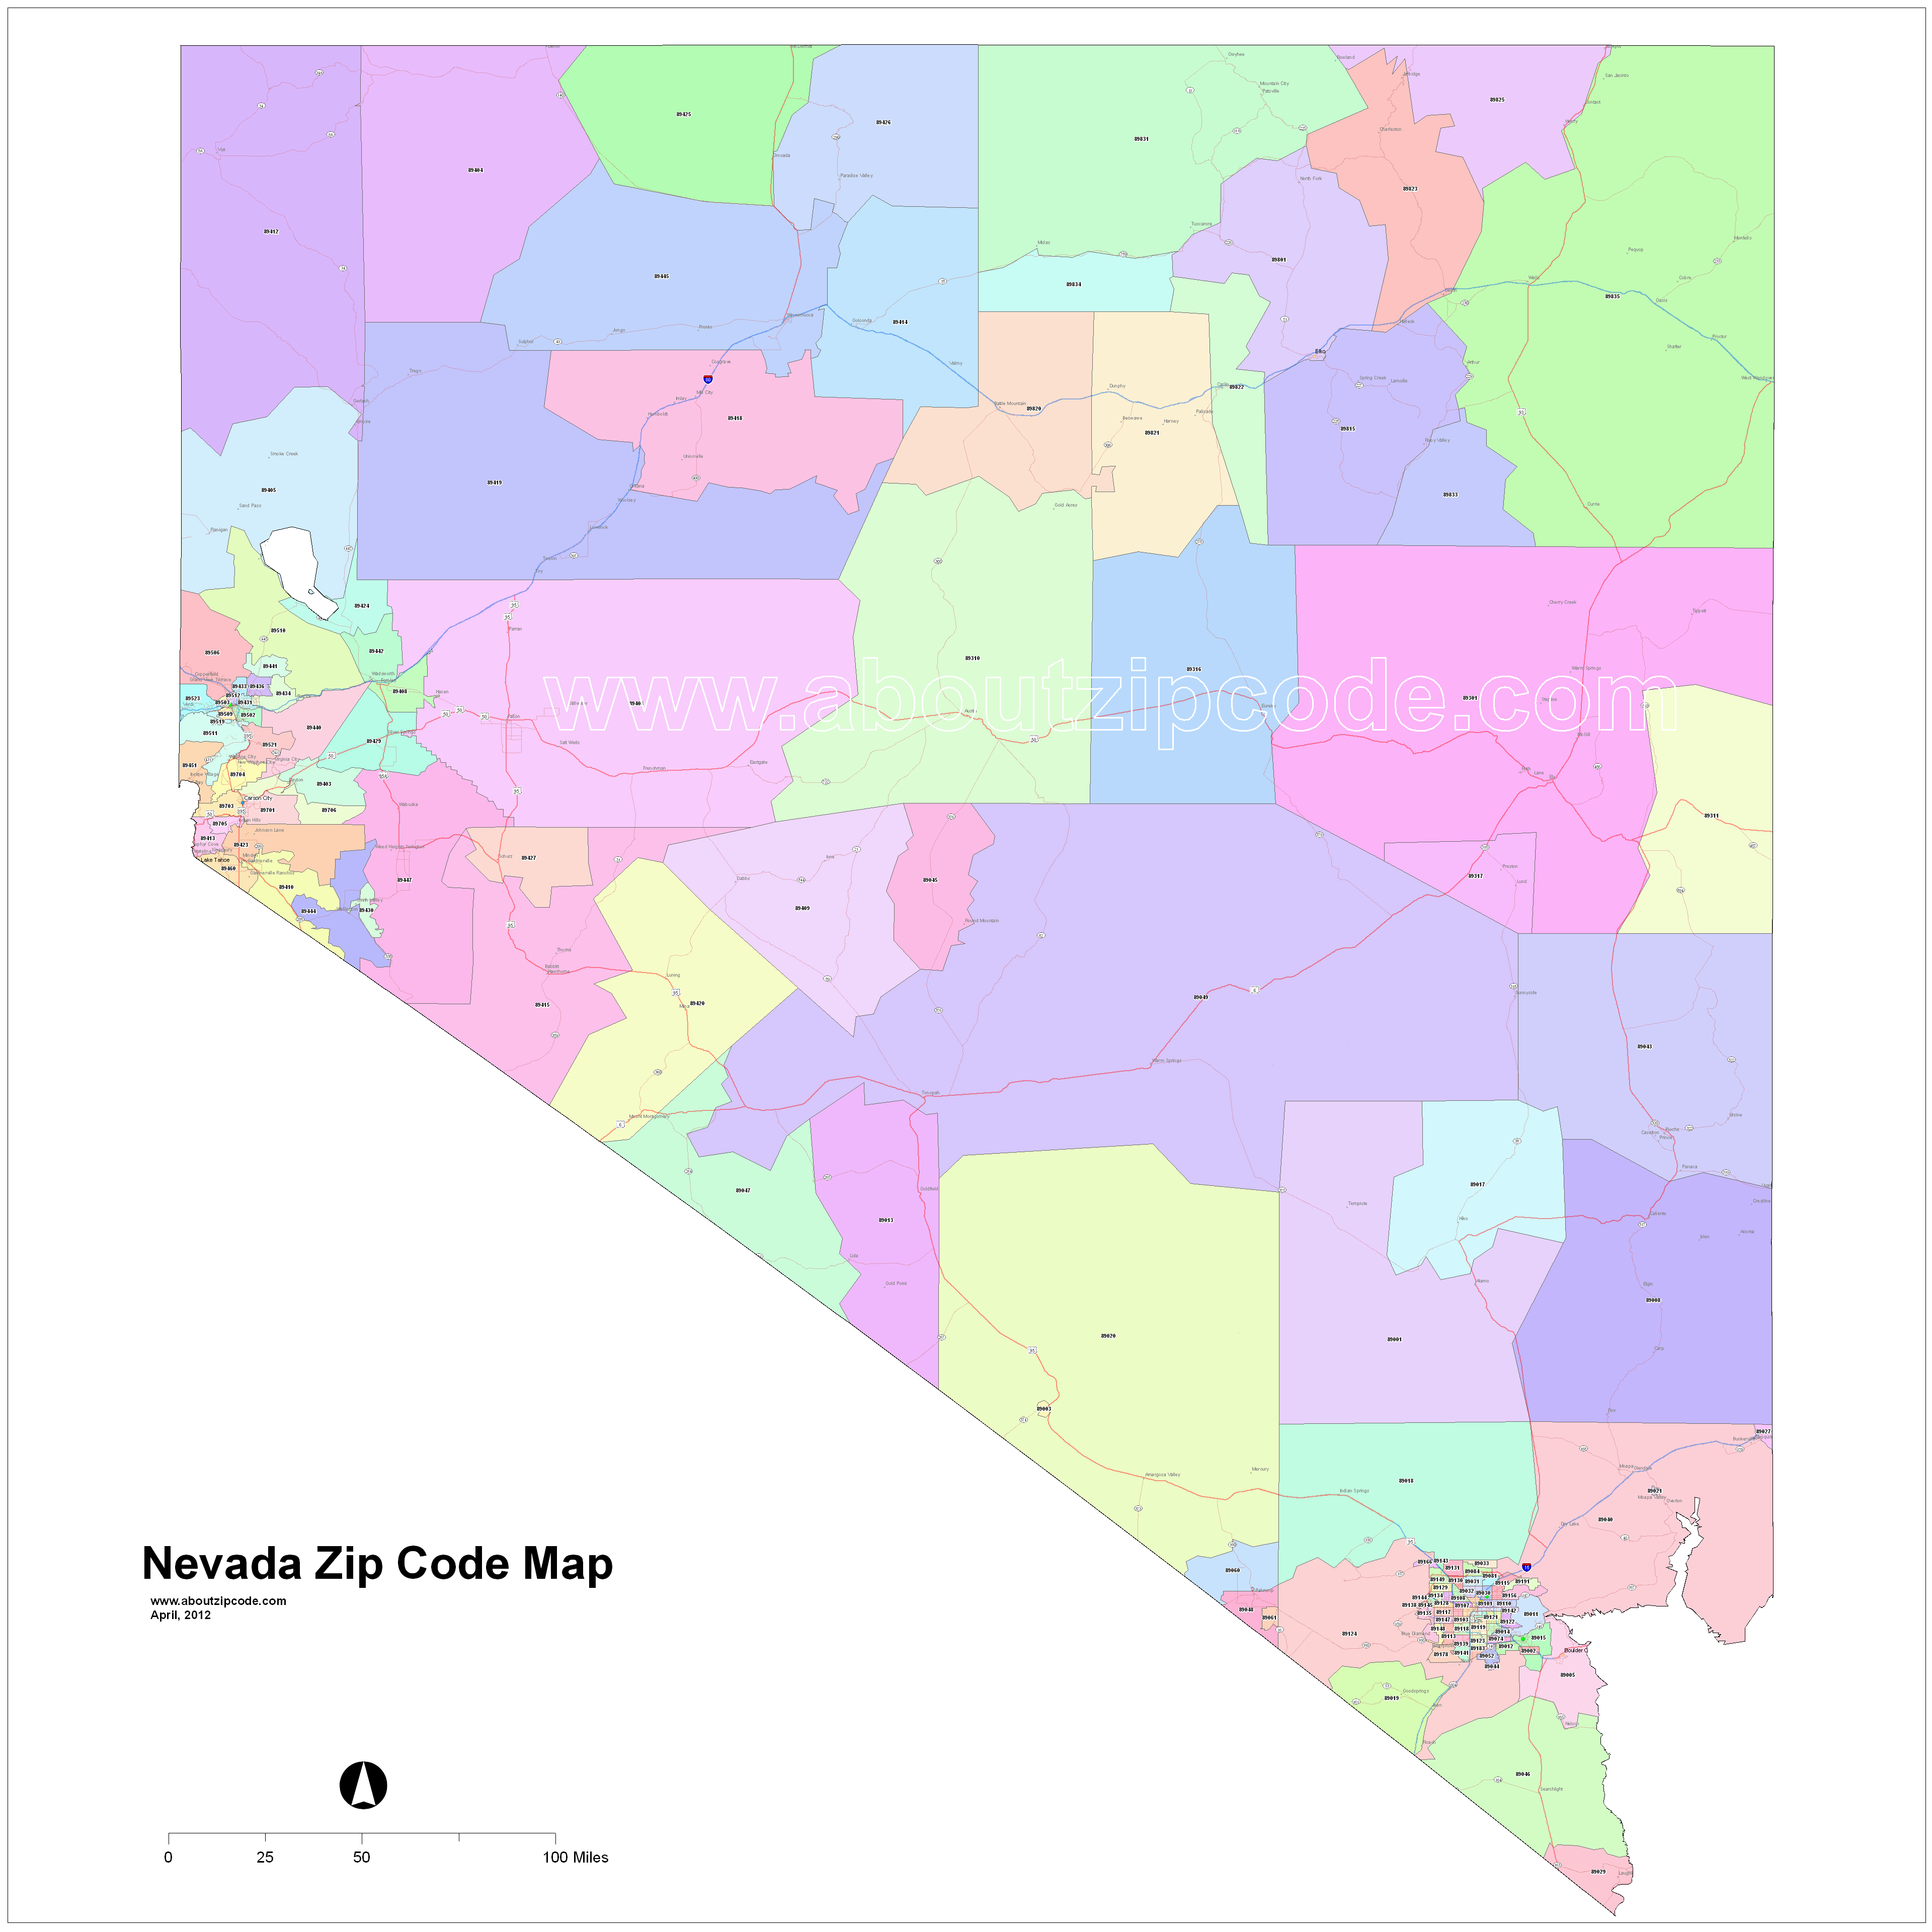 Nevada Zip Code Maps Free Nevada Zip Code Maps 2764